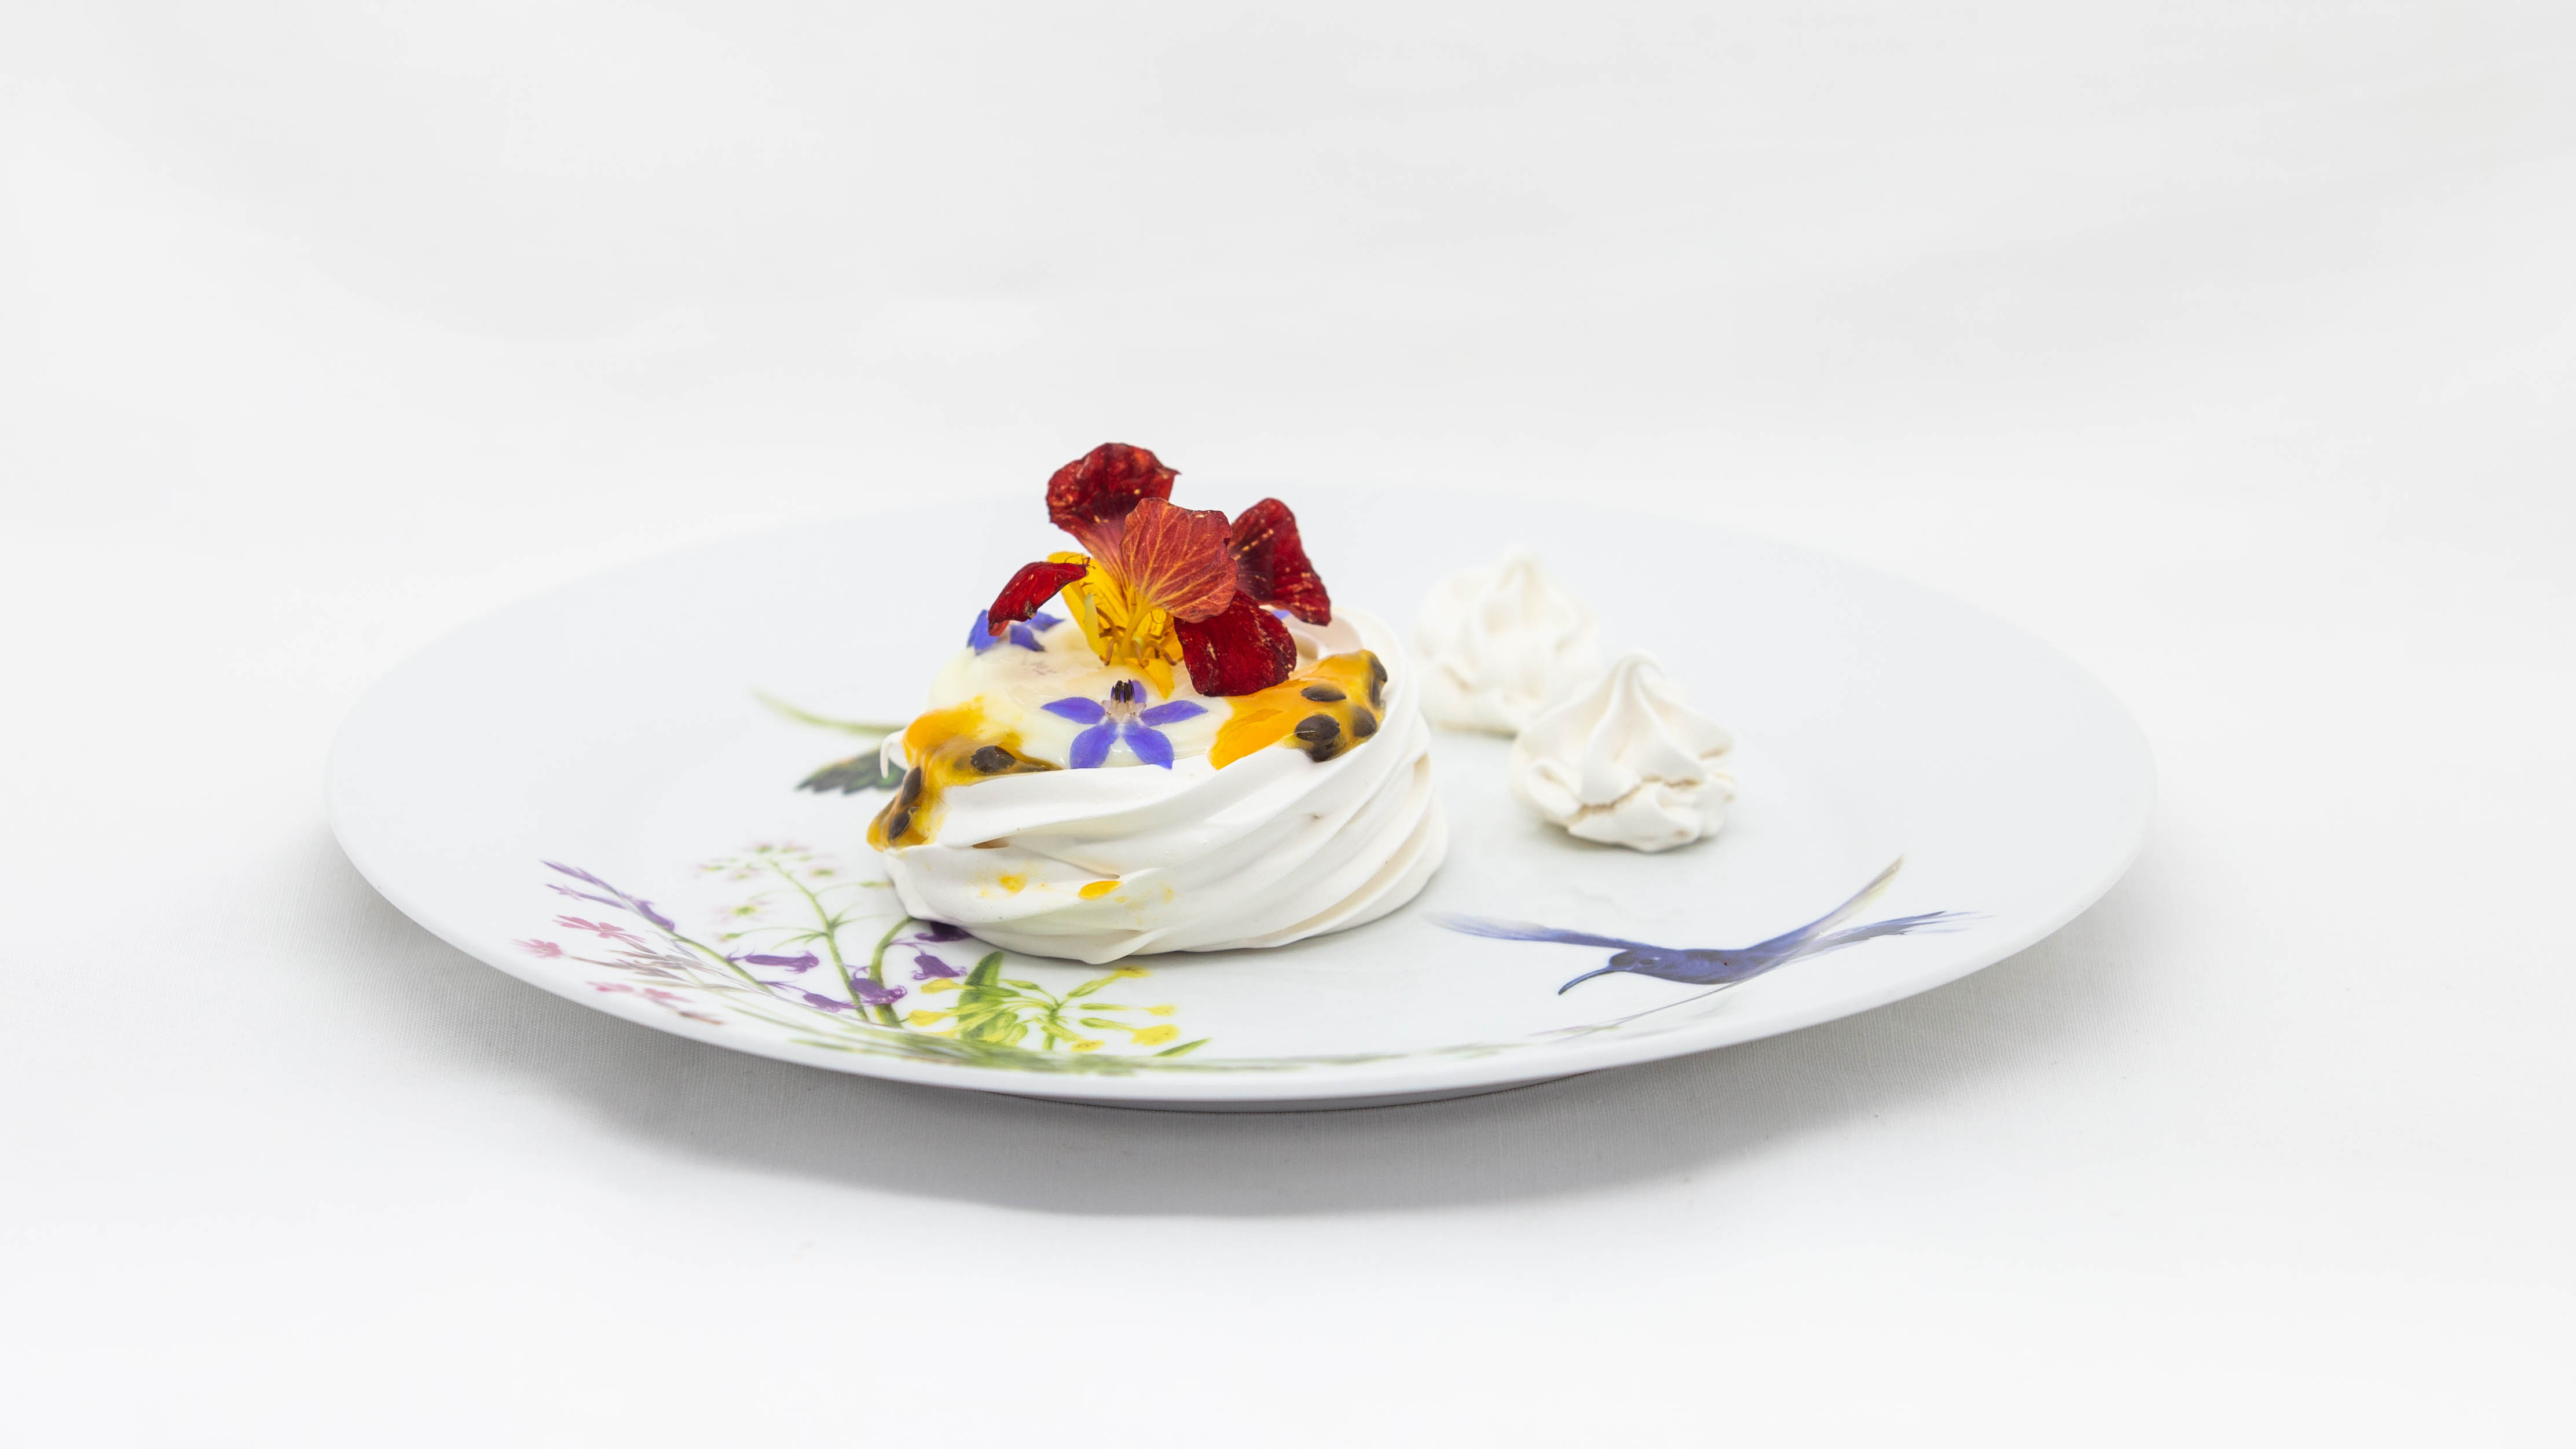 Pavlova de geleia de frutas vermelhas - uma deliciosa sugestão de sobremesa